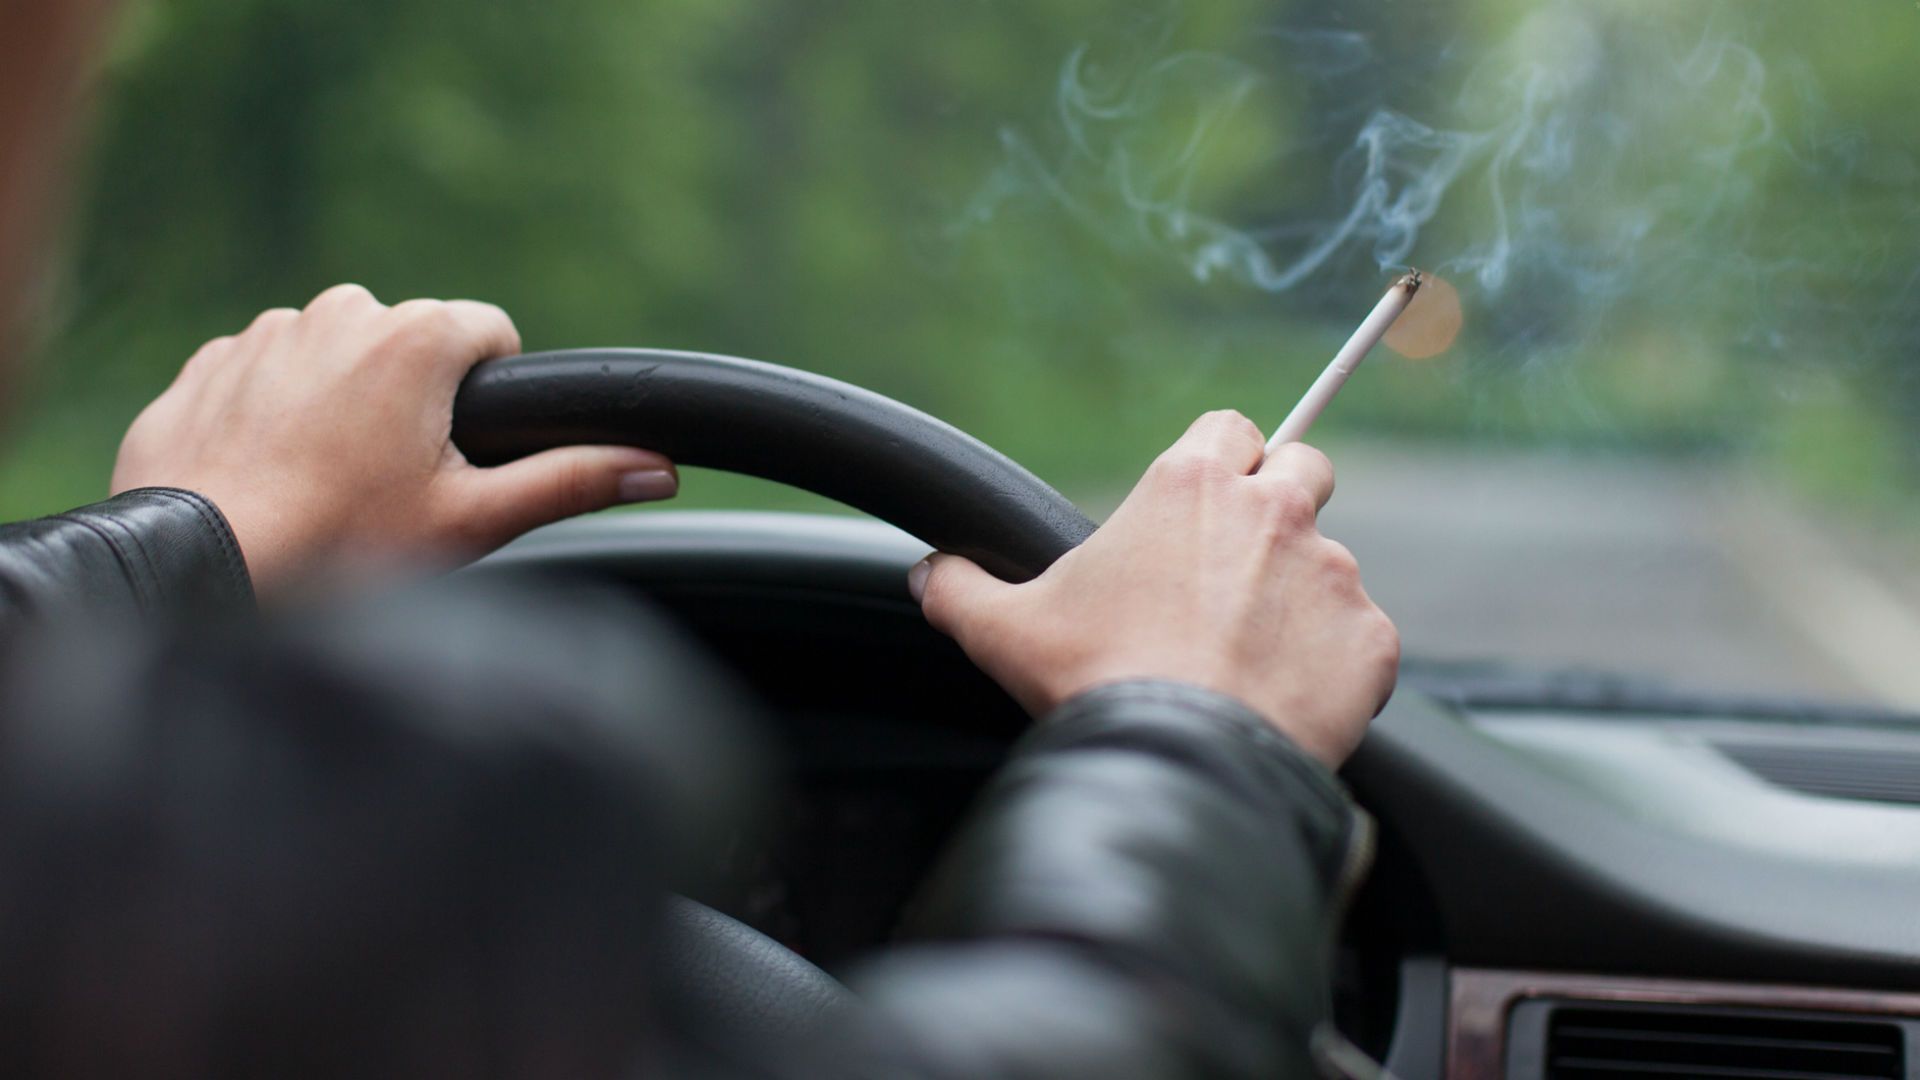 Parabrisas | Por qué es peligroso fumar en el auto